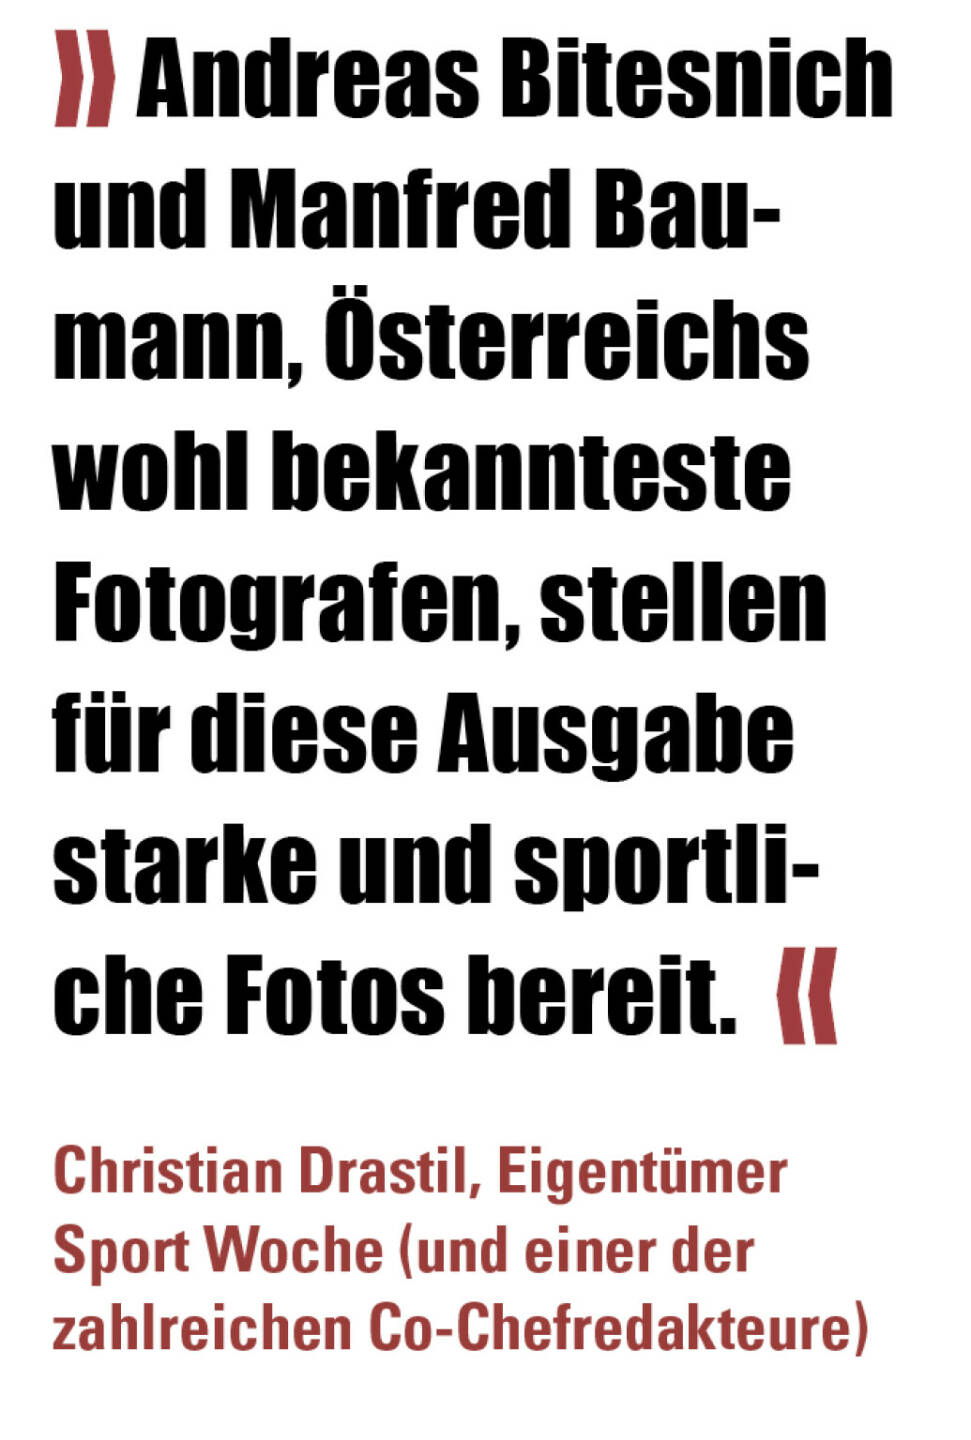 » Andreas Bitesnich und Manfred Baumann, Österreichs wohl bekannteste Fotografen, stellen für diese Ausgabe starke und sportliche Fotos bereit.  «
Christian Drastil, Eigentümer Sport Woche (und einer der zahlreichen Co-Chefredakteure) 